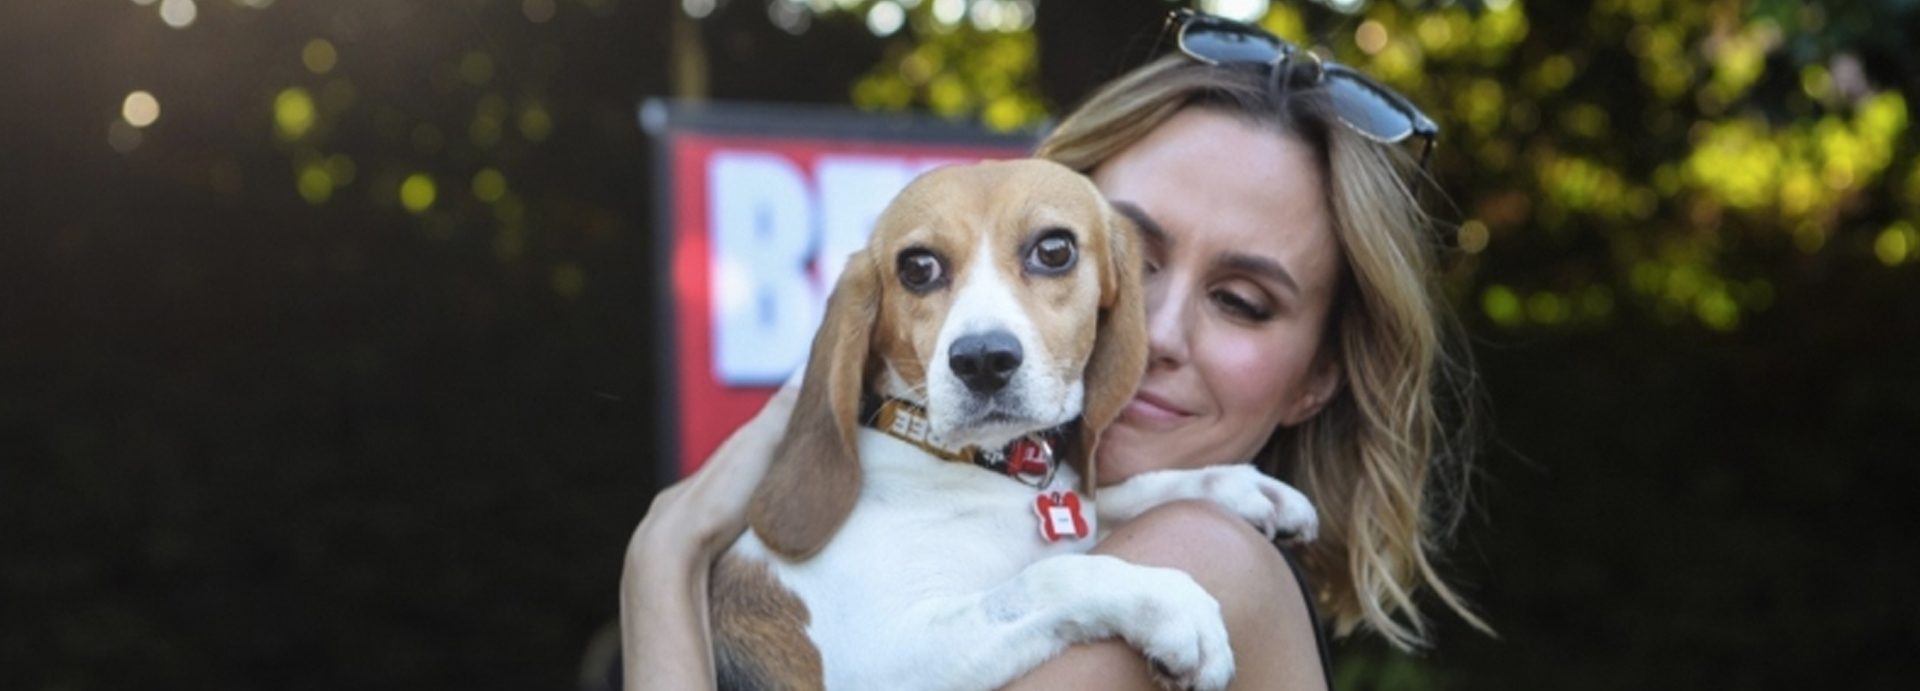 The 'LA Love' Rescue! – Beagle Freedom Project